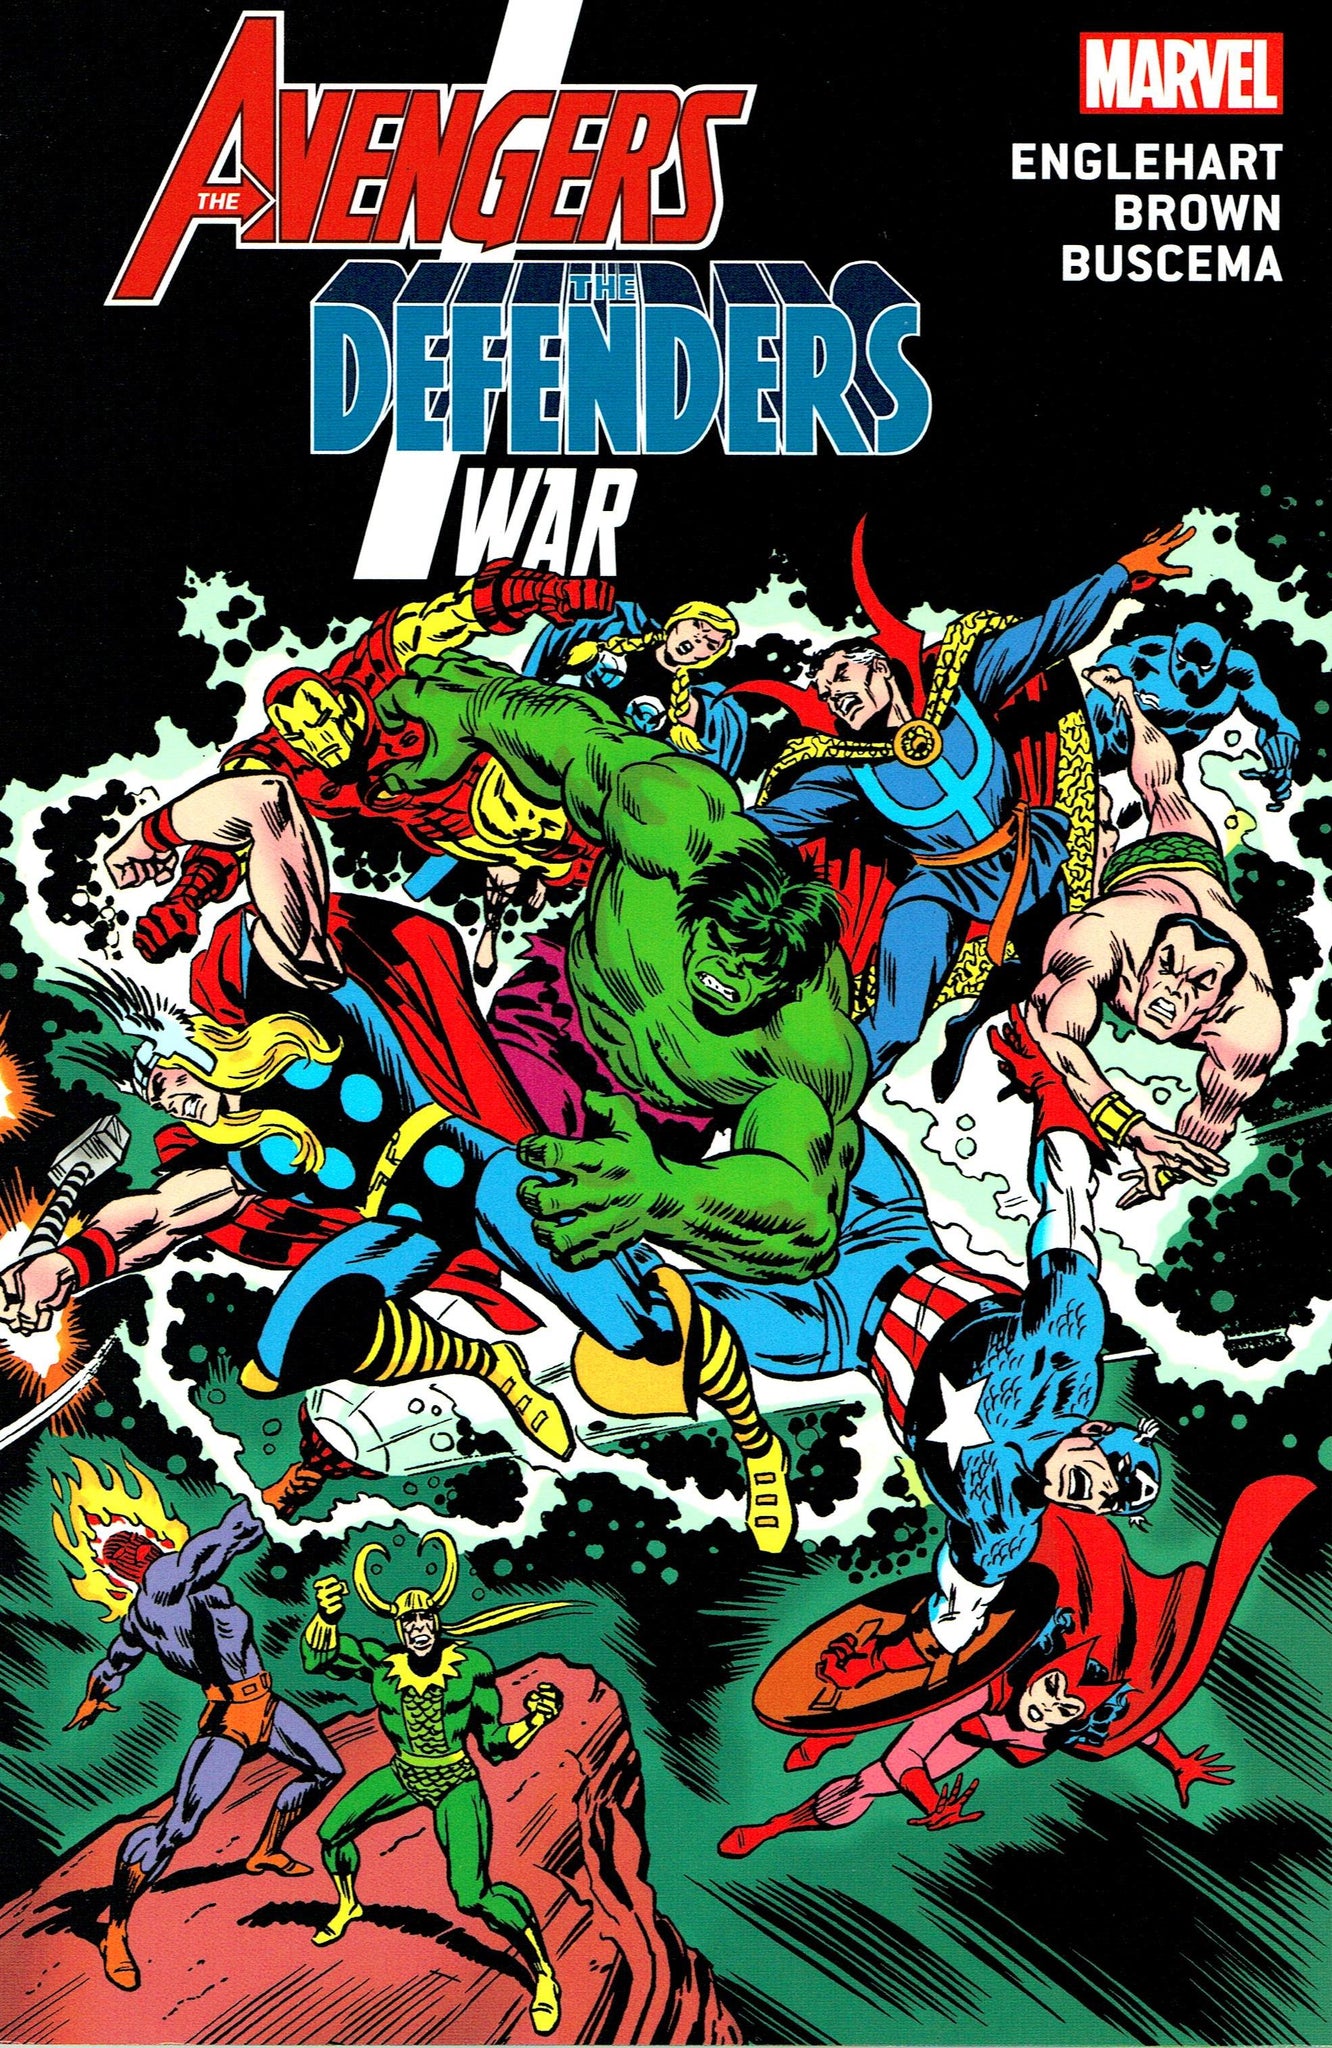 Avengers: The Avengers / Defenders War